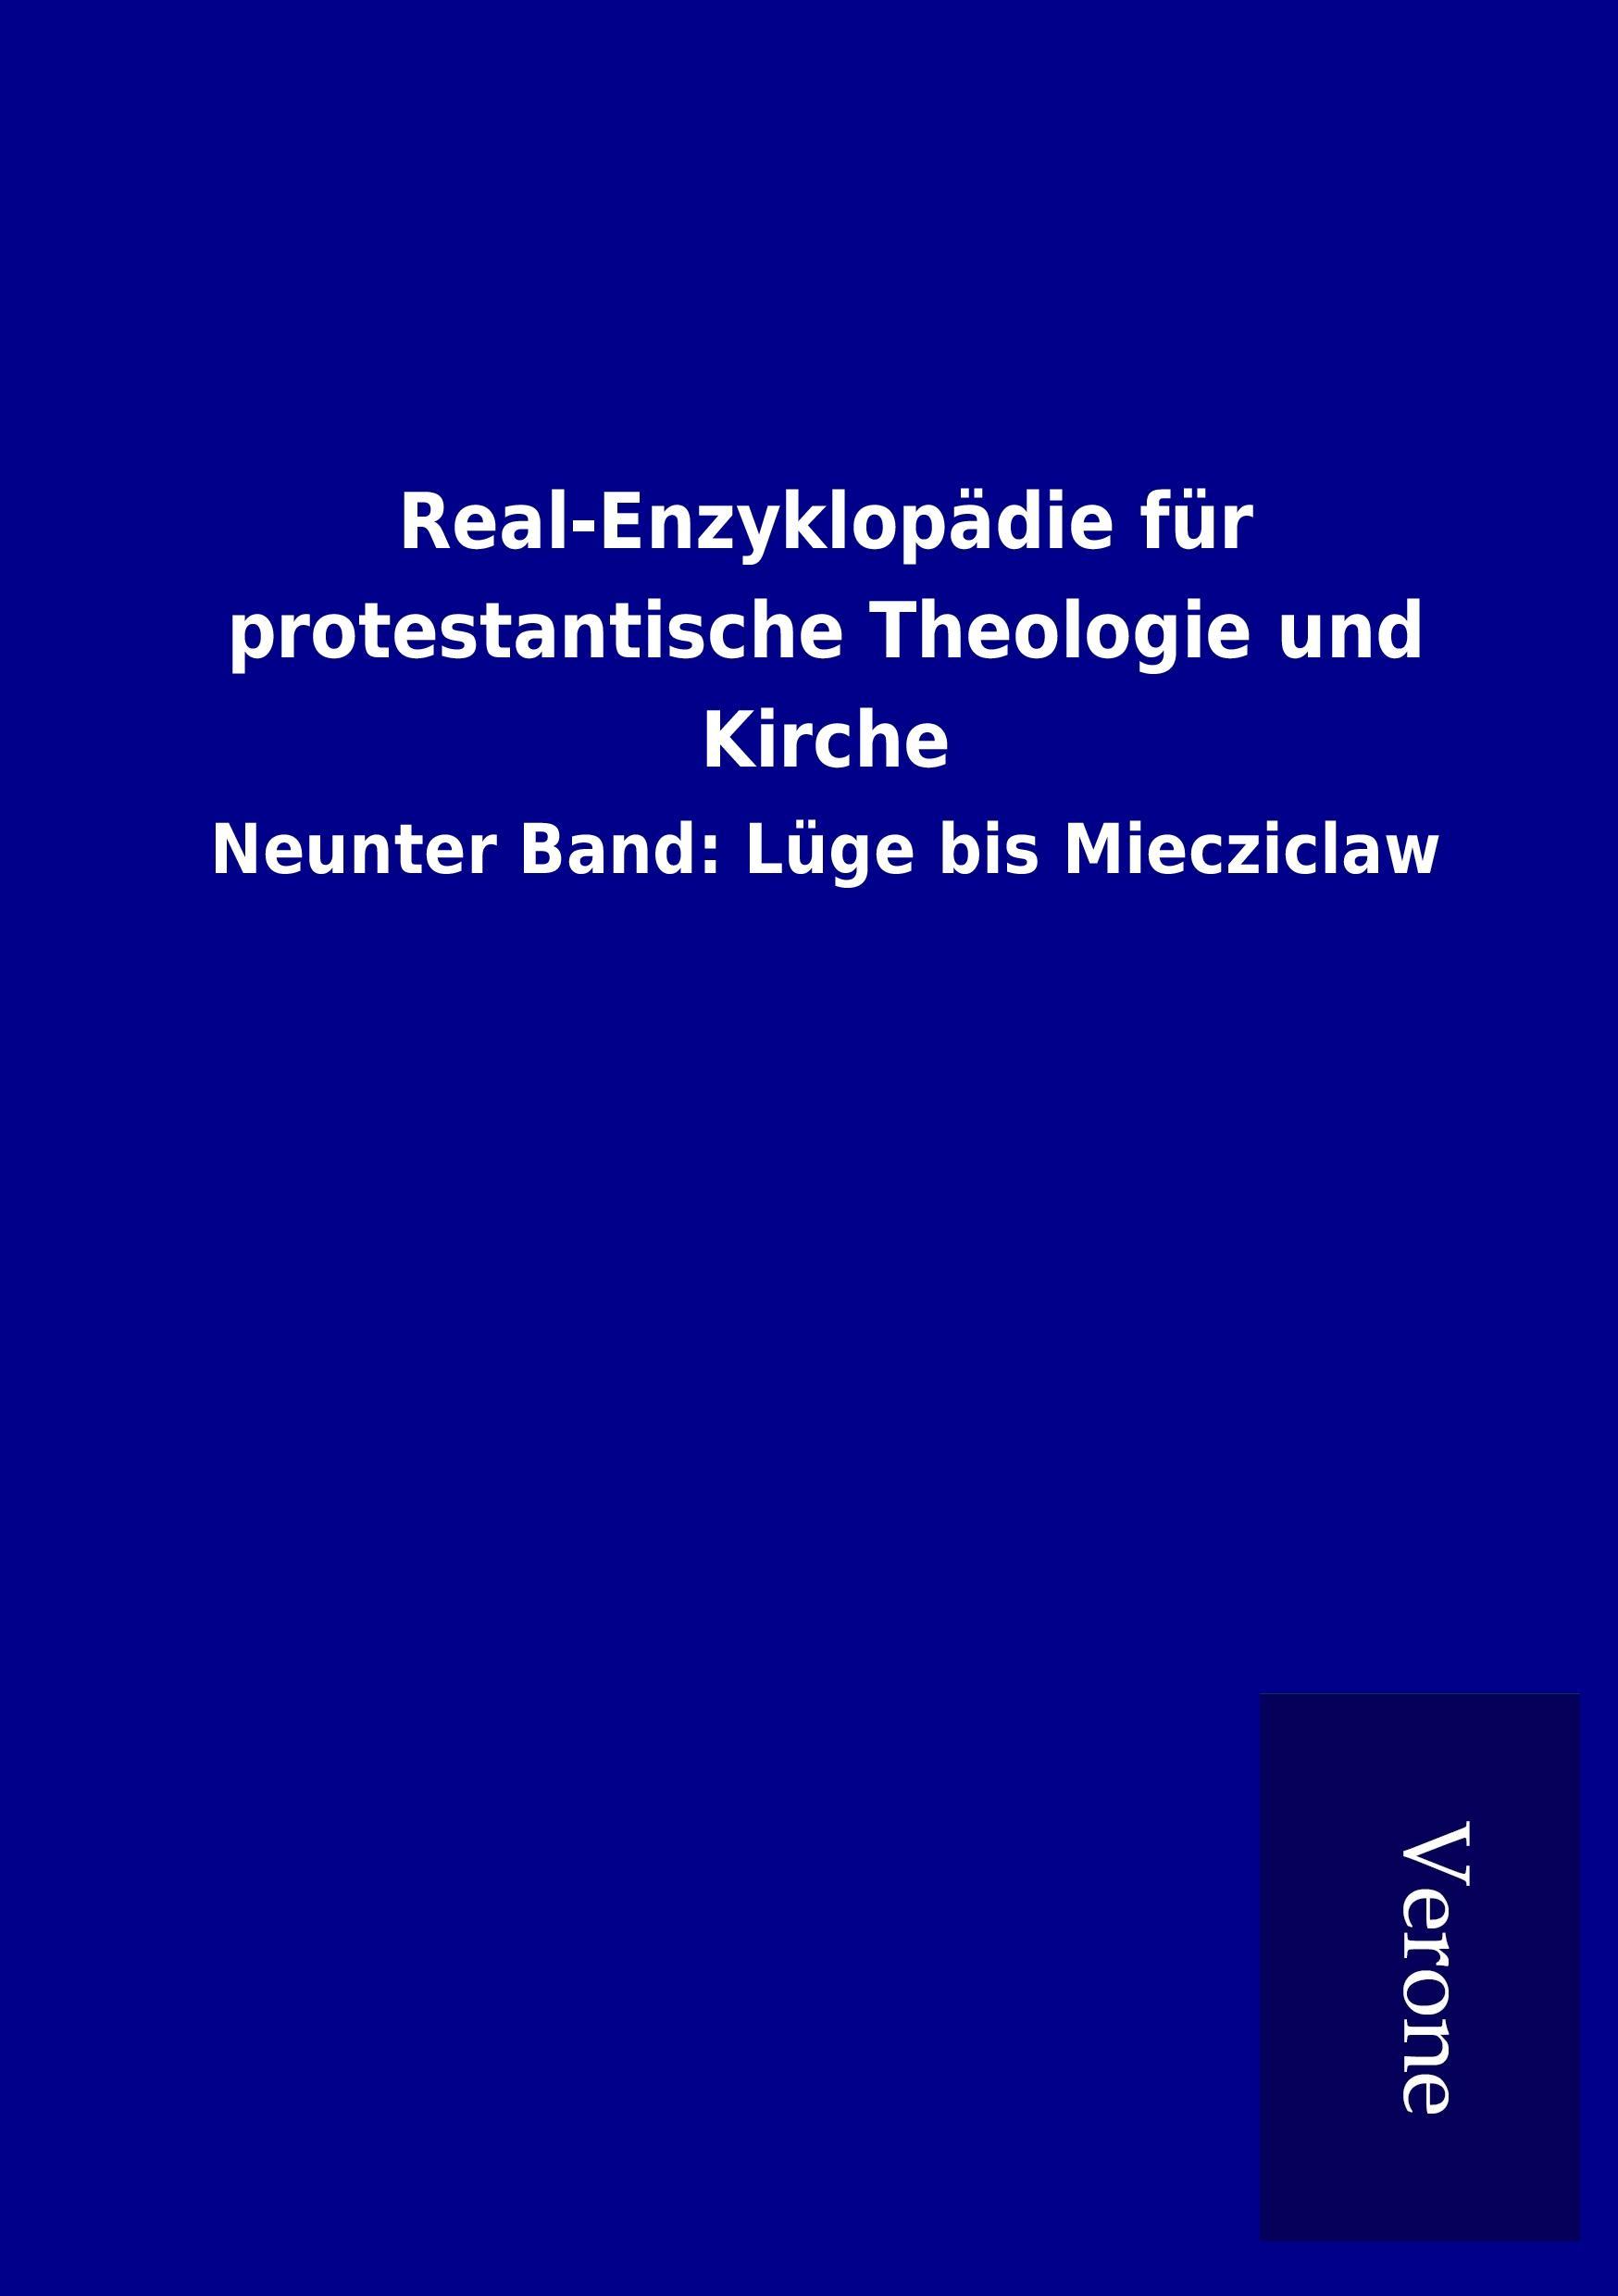 Real-Enzyklopaedie fuer protestantische Theologie und Kirche - ohne Autor